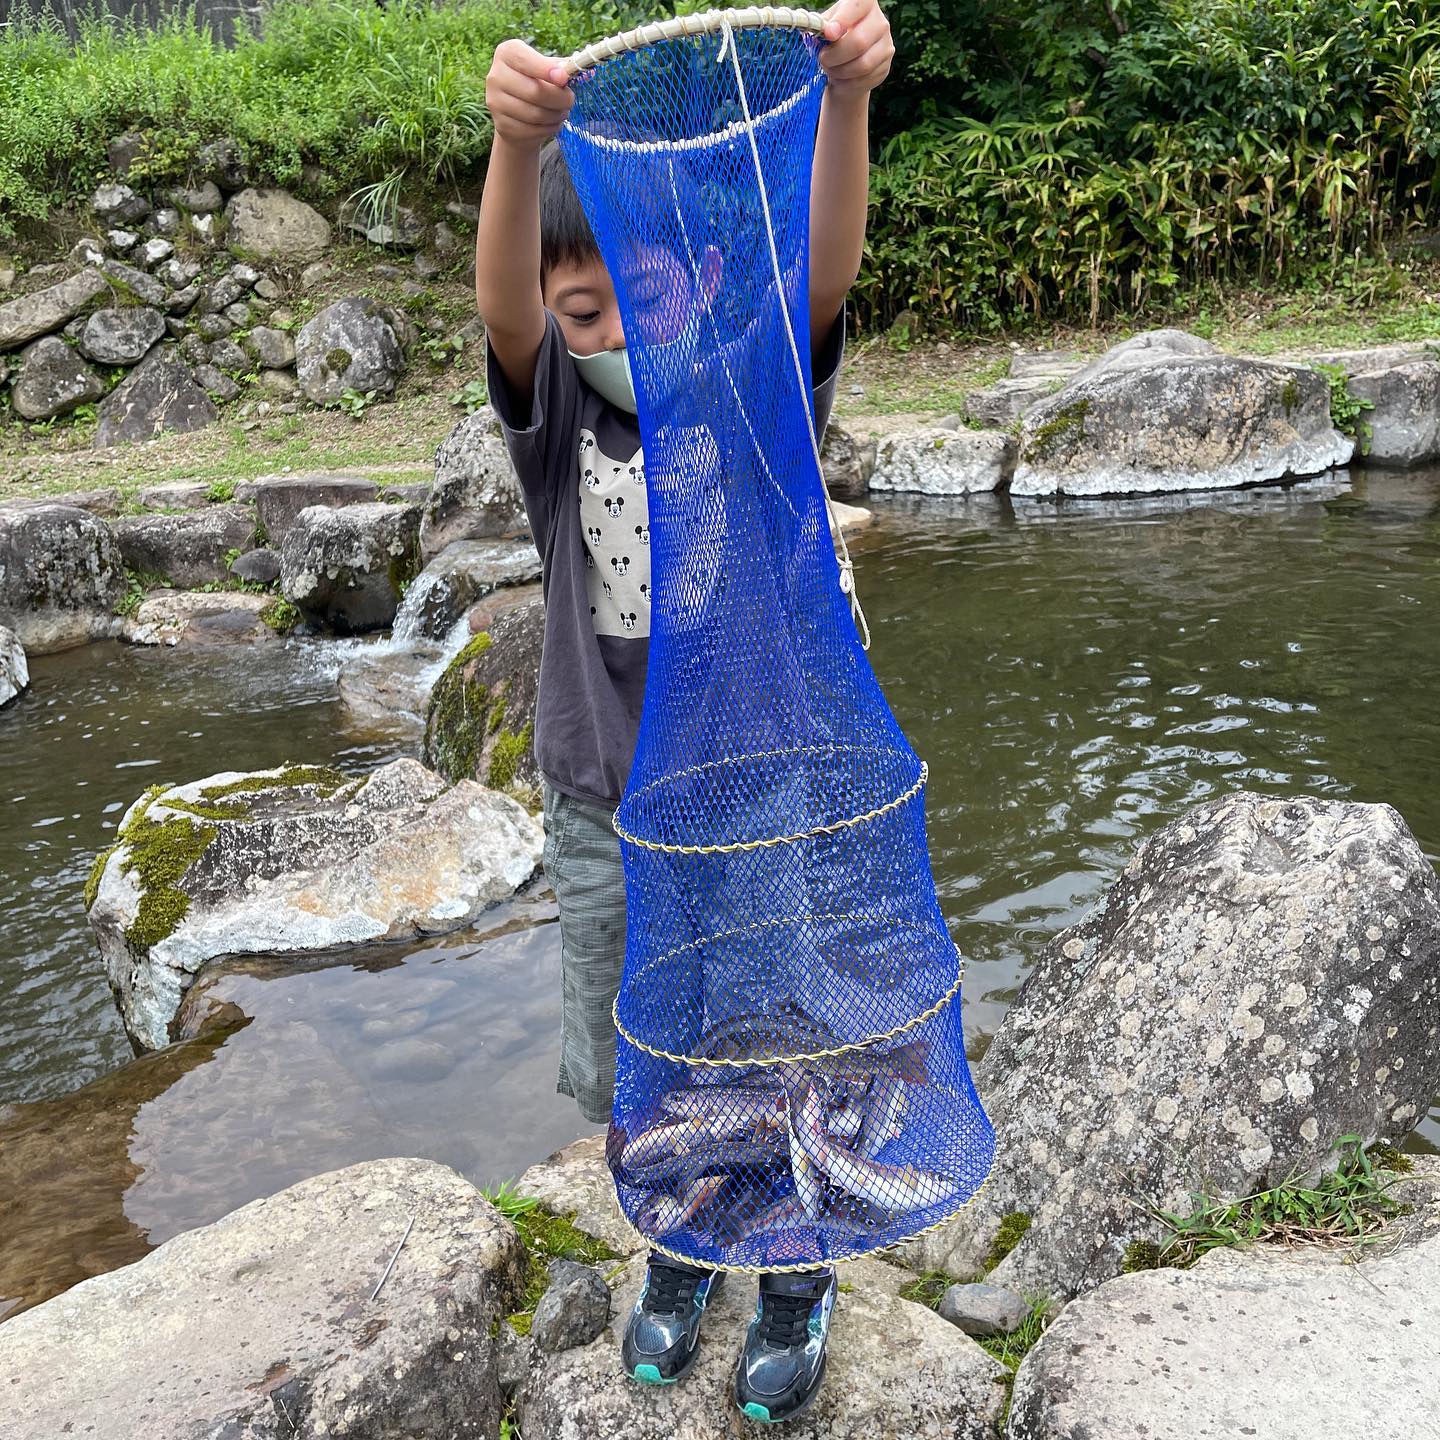 勝山市のフィッシングよこくらで、子供と釣り体験